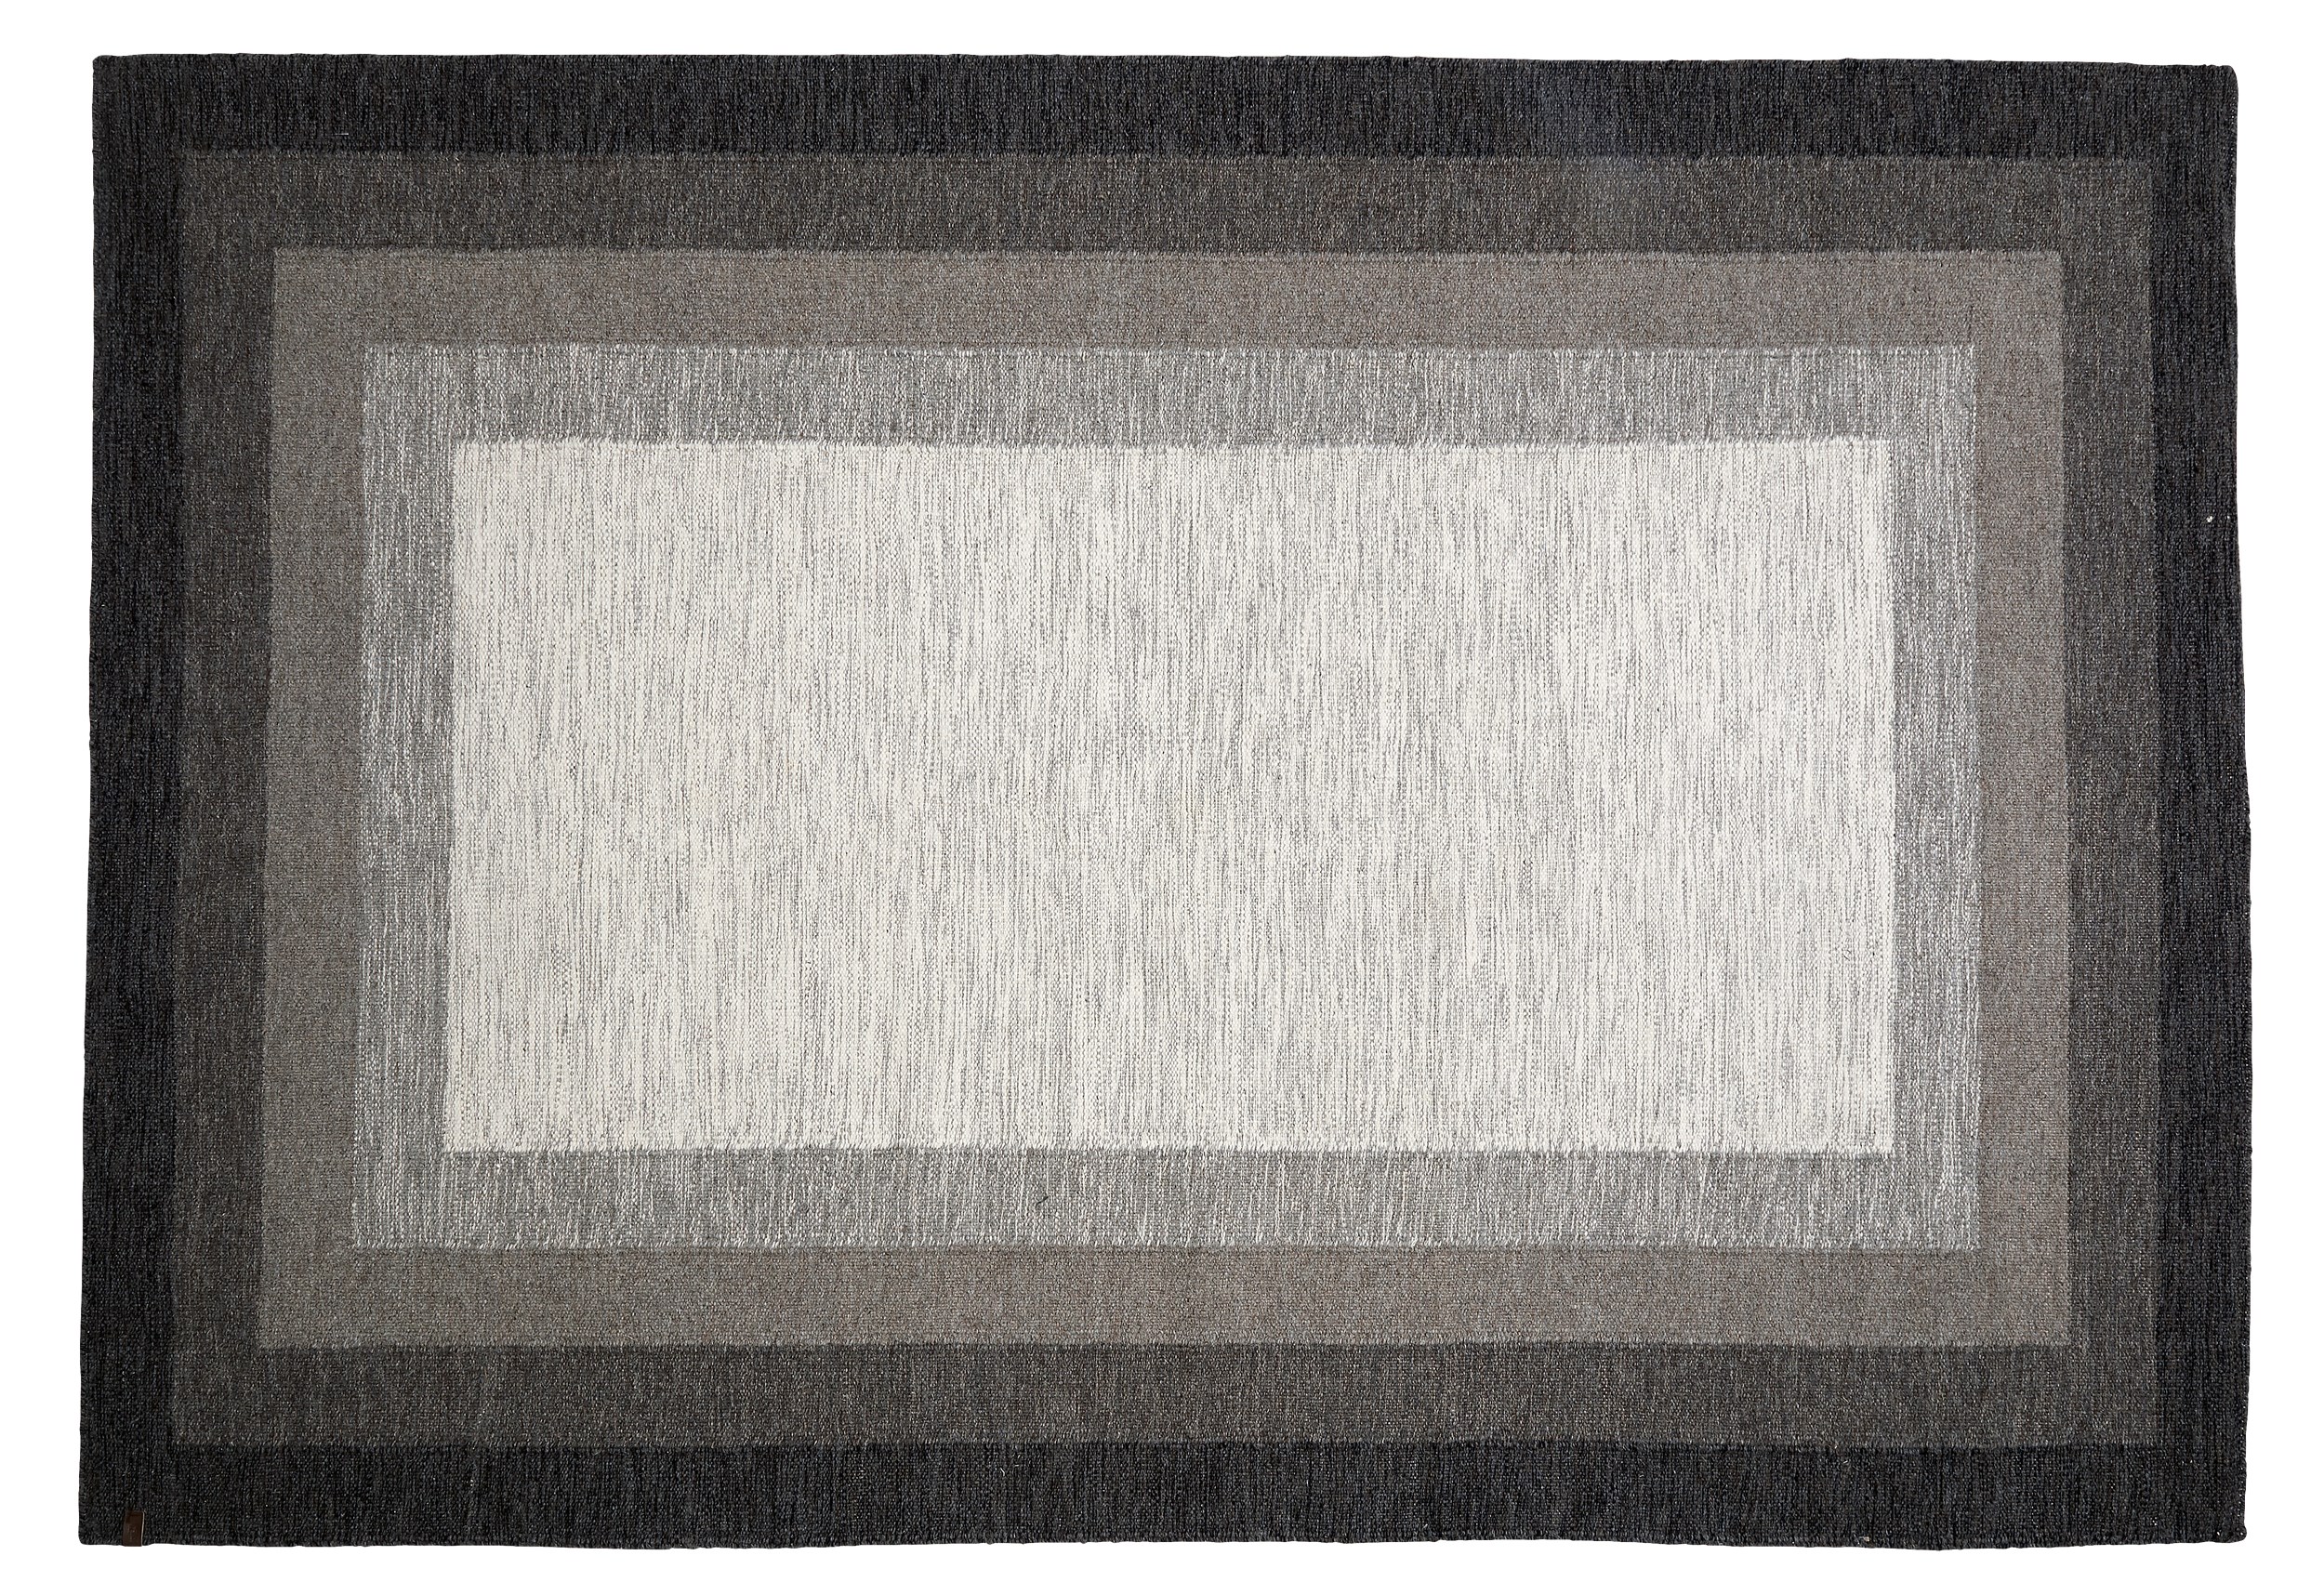 Åland Kelimmatta 140 x 200 cm - Brun/beige ull och kvadratiskt mönster